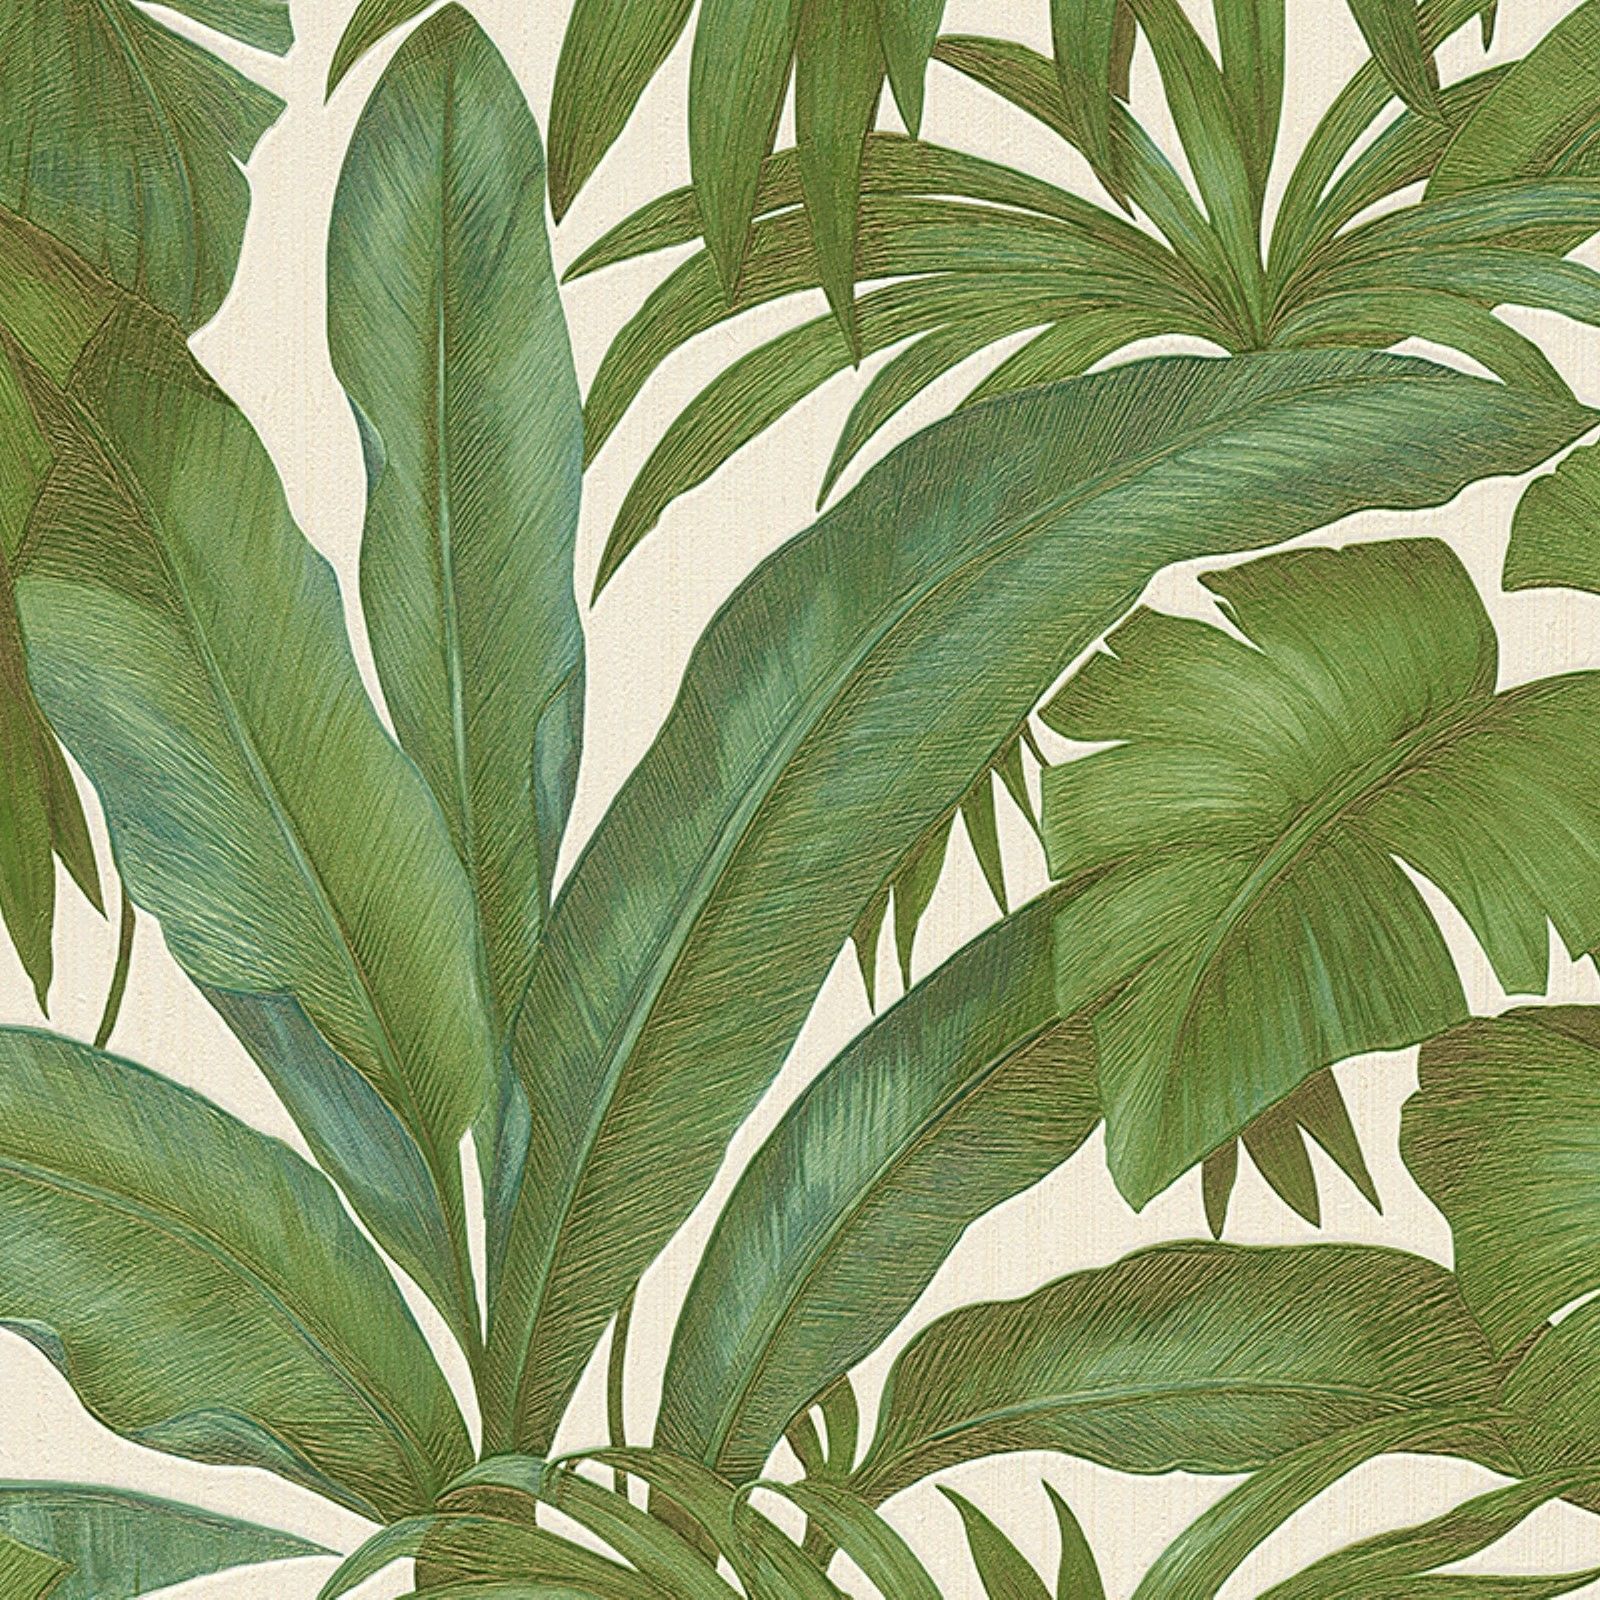 녹색 야자 잎 벽지,식물,꽃,잎,꽃 피는 식물,관엽 식물